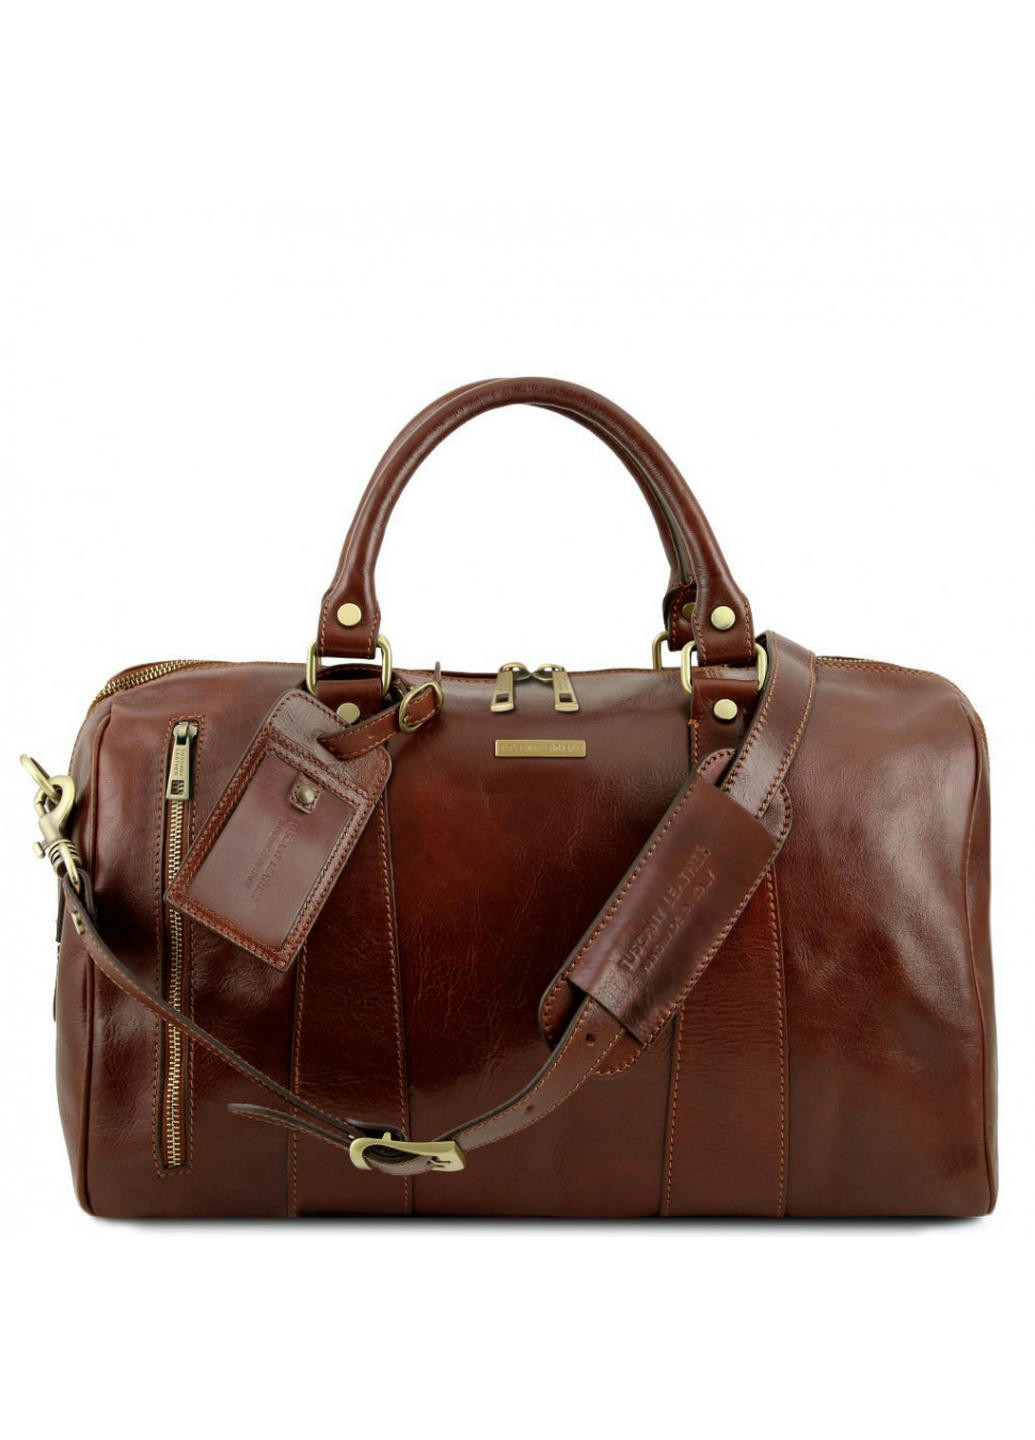 Дорожная кожаная сумка-даффл - Малый размер Tuscany TL141216 Voyager (Коричневый) Tuscany Leather (257657503)